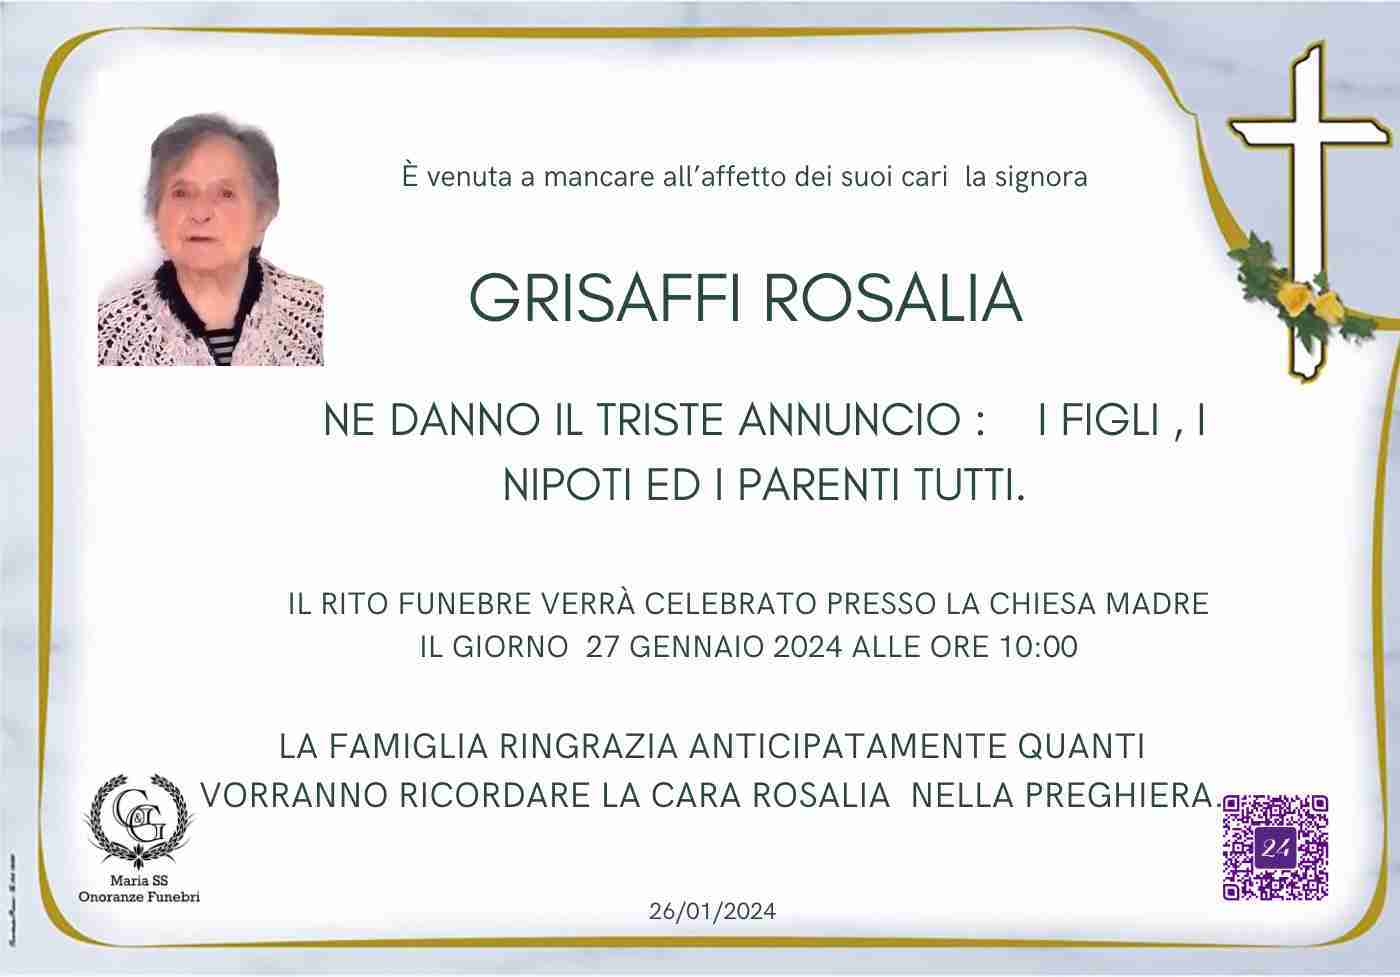 Rosalia Grisaffi